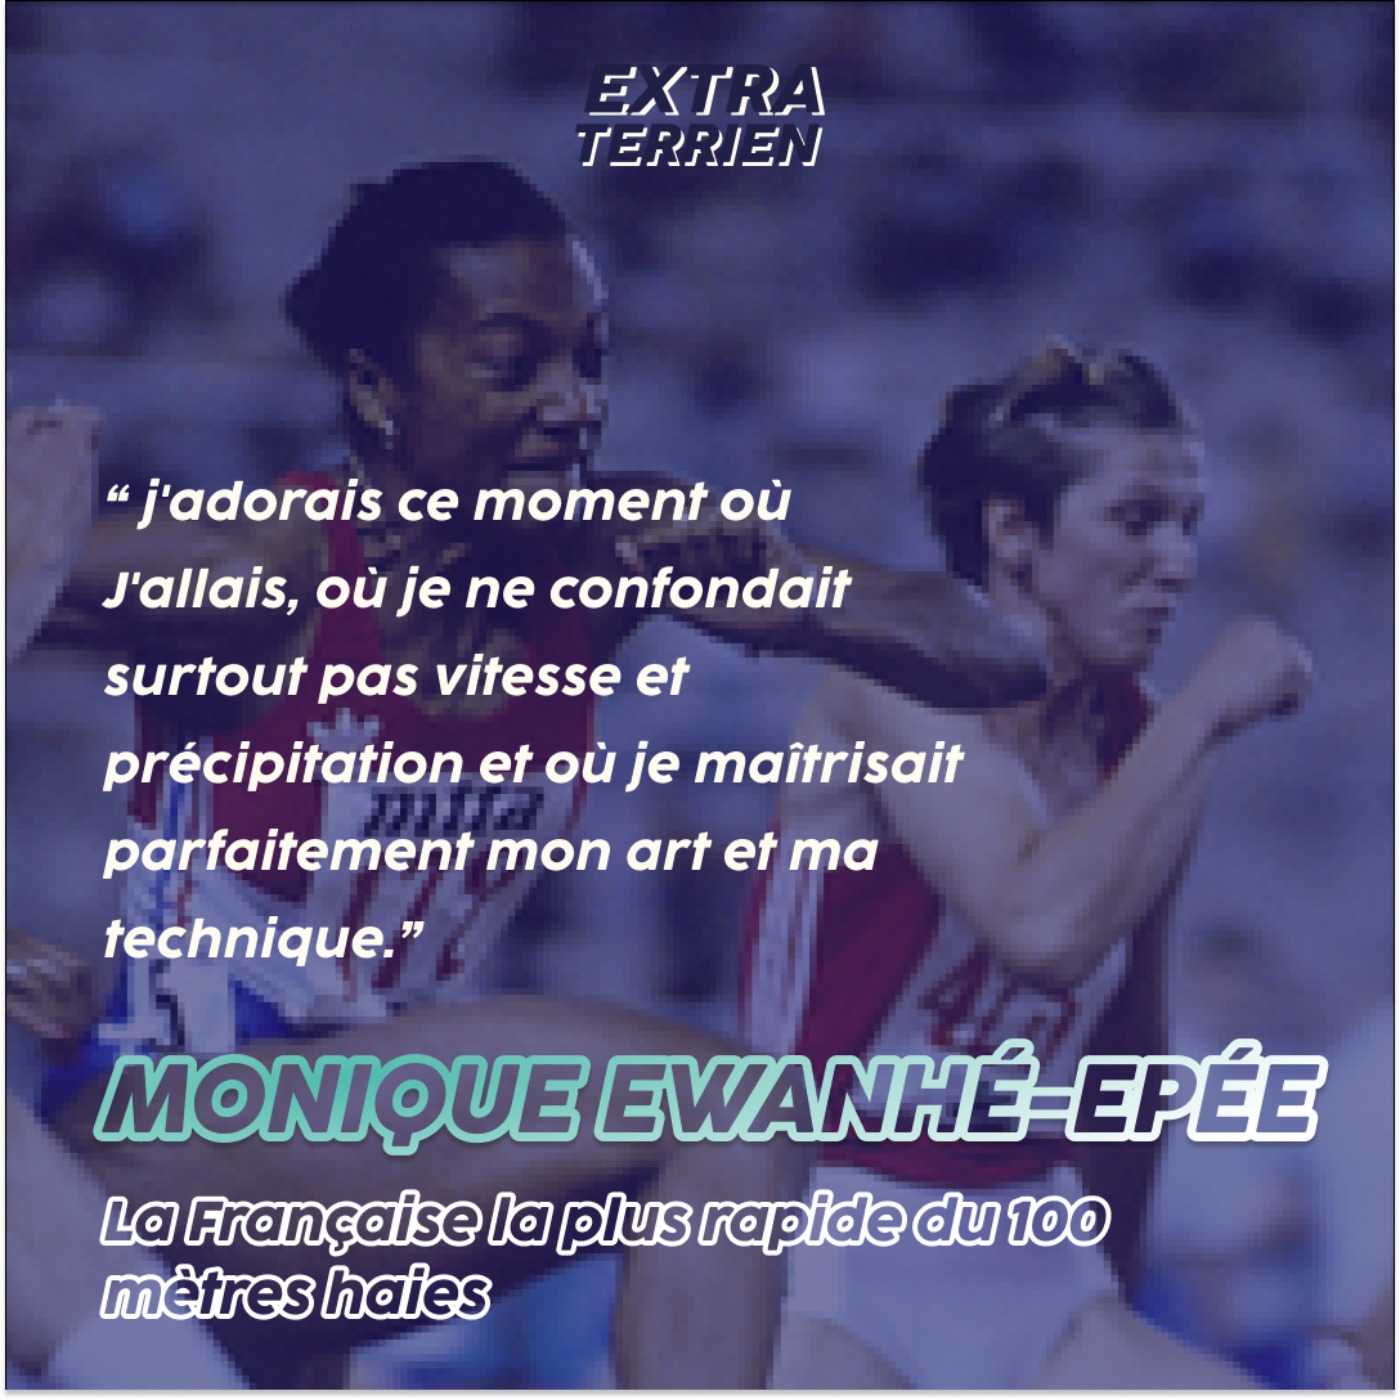 Extrait - Monique Ewanjé-Epée